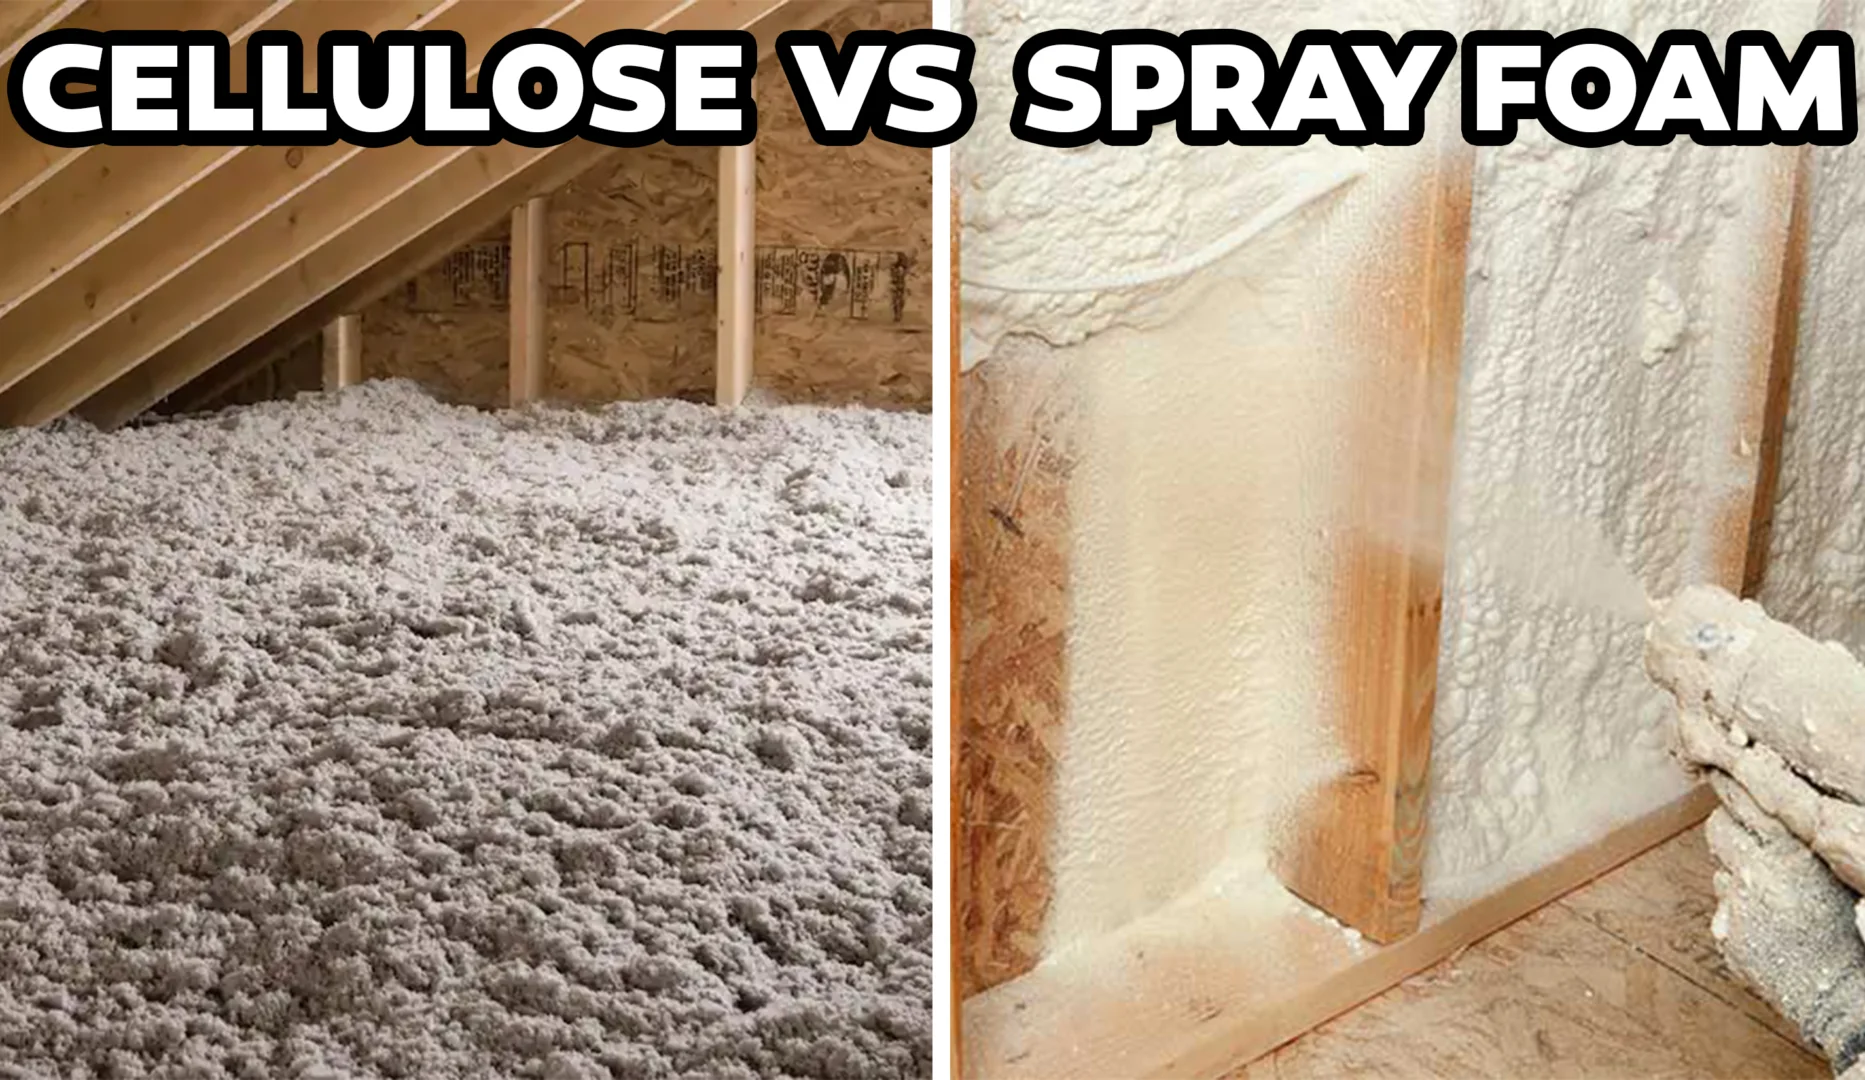 Fiberglass Insulation vs Spray Foam Insulation - Difference and Comparison